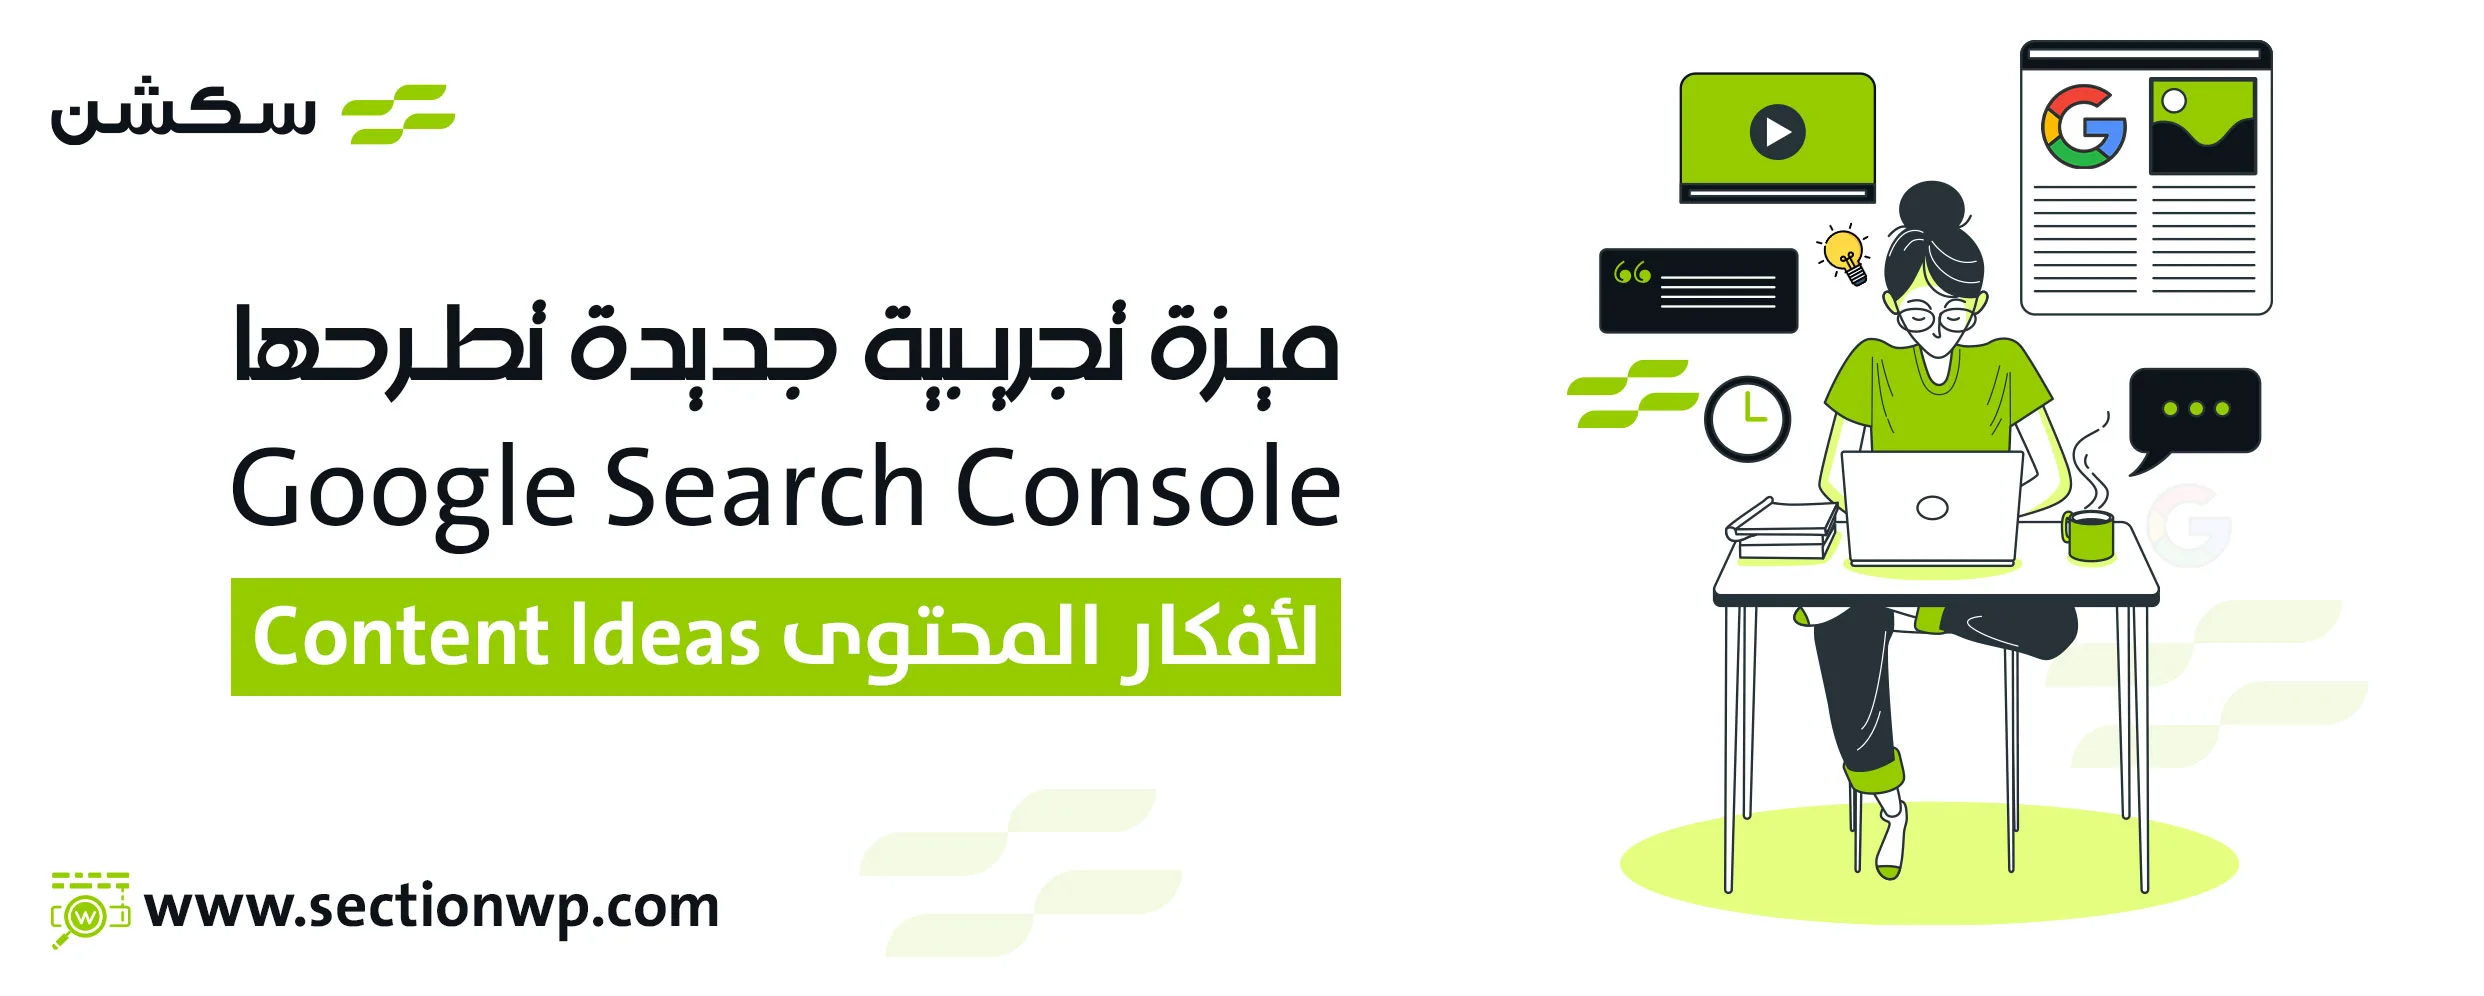 ميزة تجريبية جديدة تطرحها Google Search Console لأفكار المحتوى Content ldeas